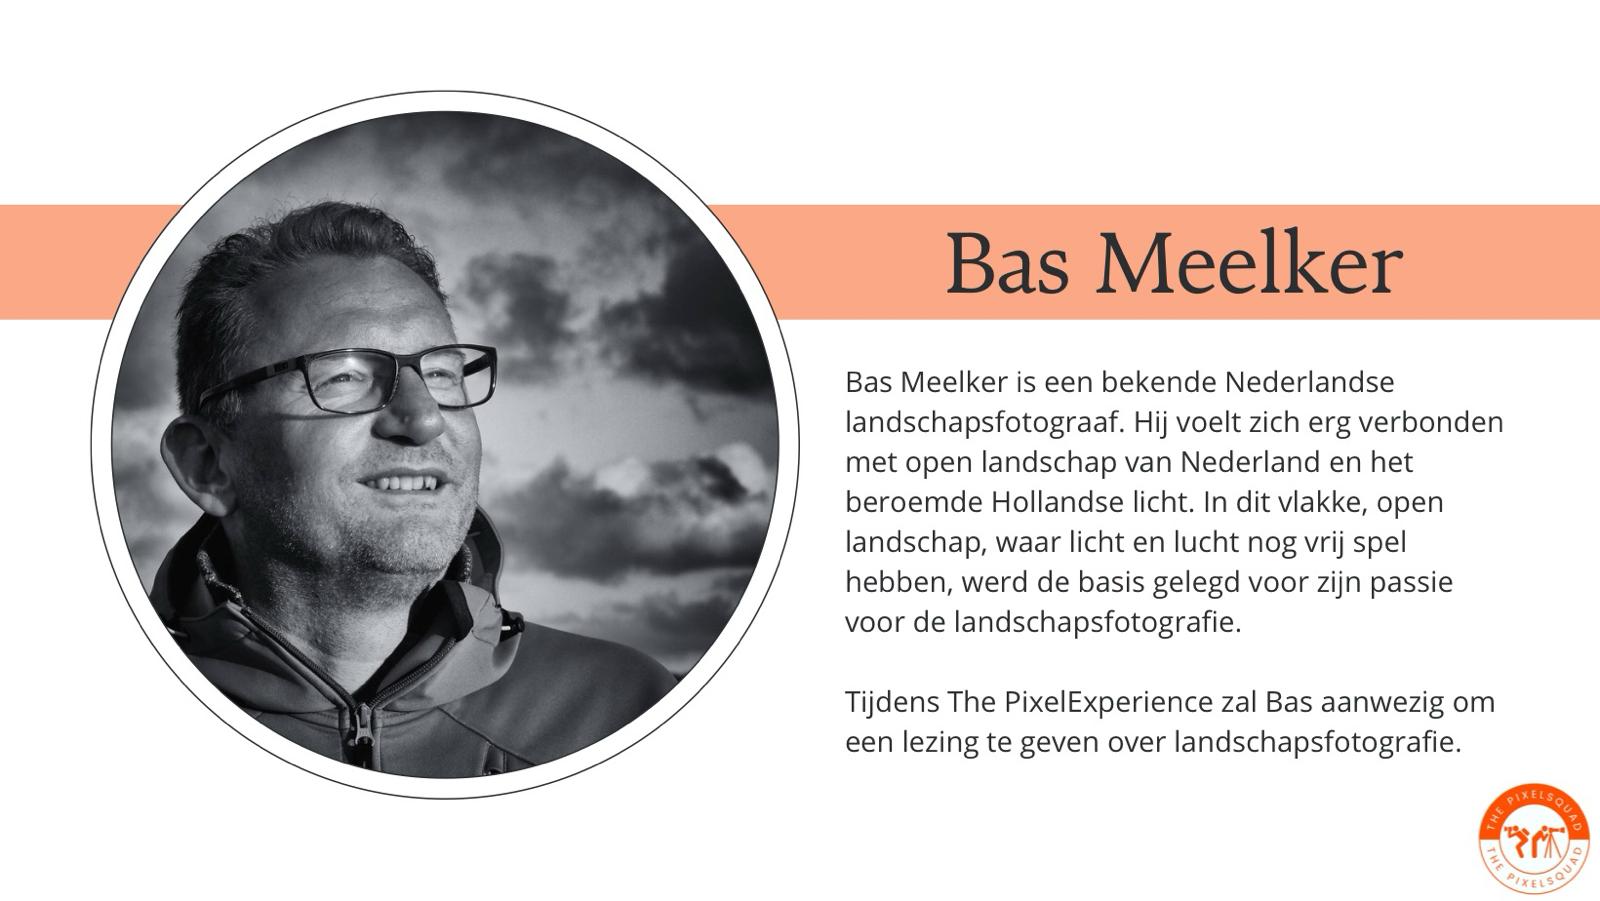 Bas Meelker, Nederlands bekendste landschapsfotograaf, geeft lezing op foto event The PixelExperience